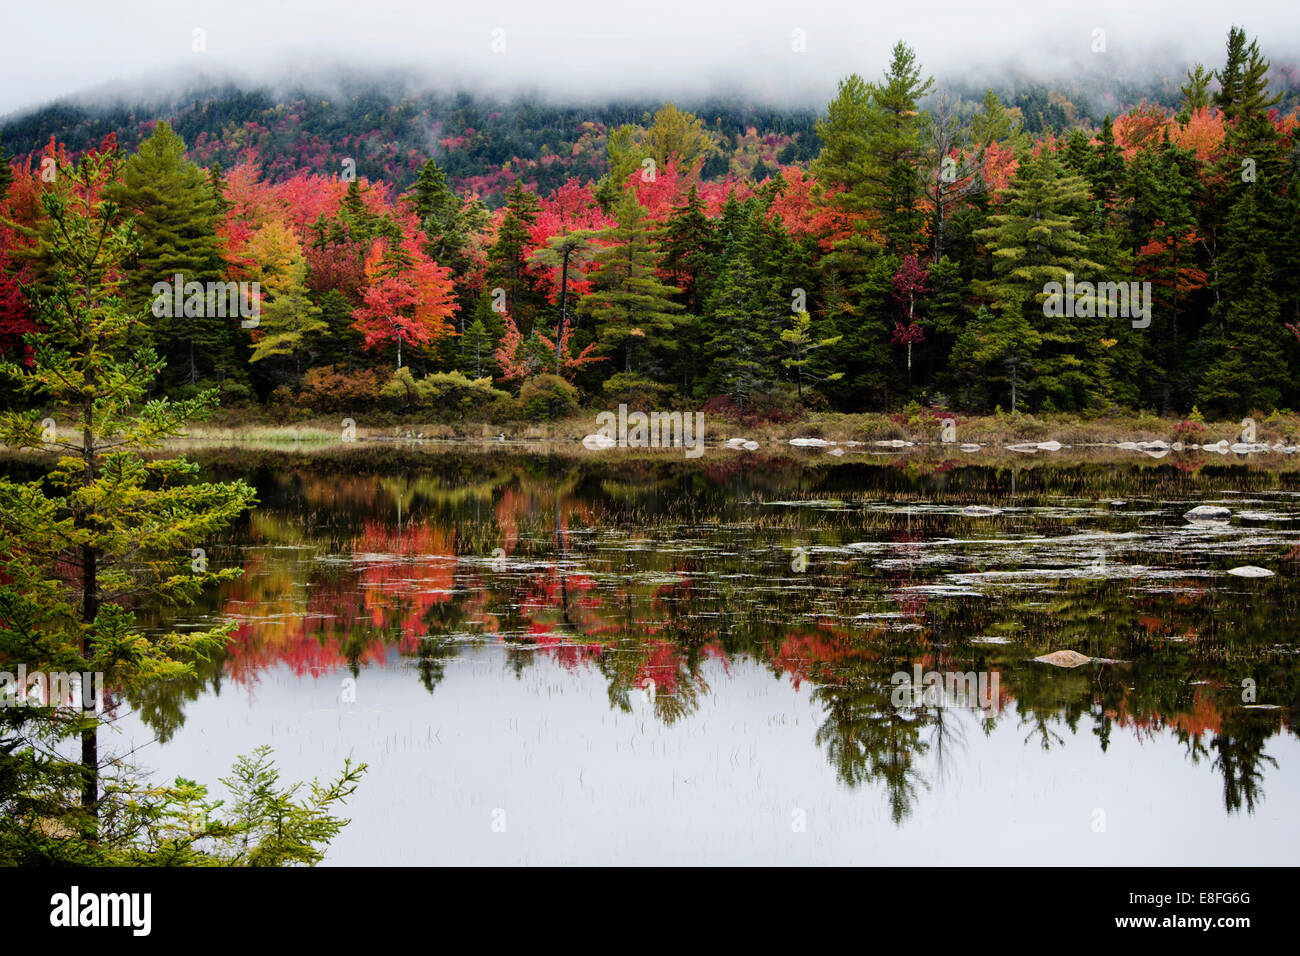 Autumn landscape, New England, United States Stock Photo